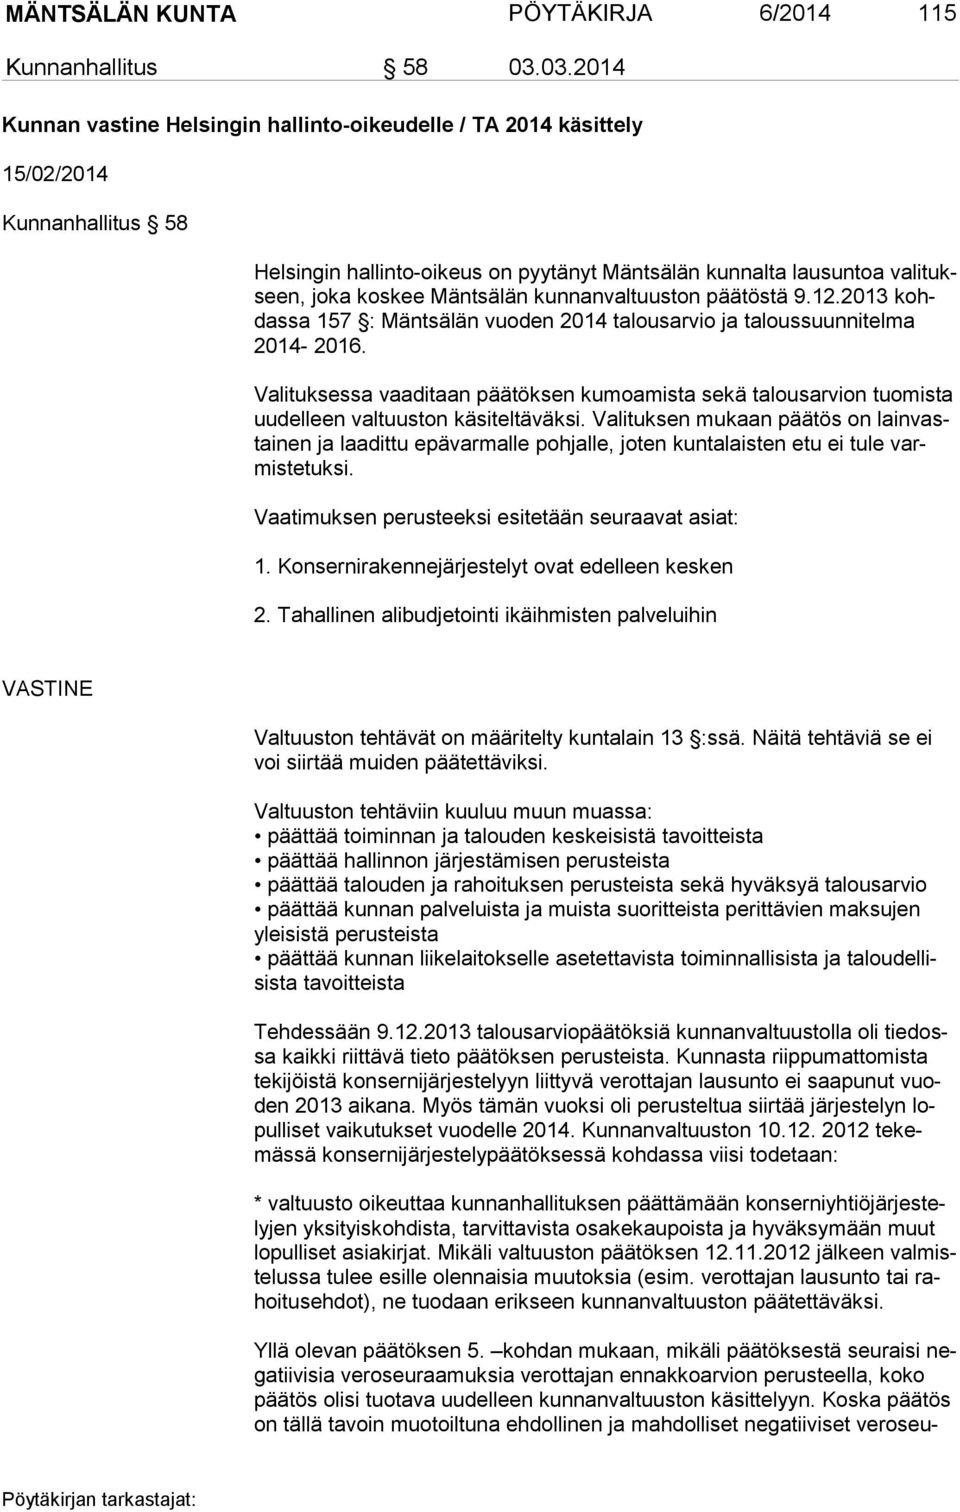 Mäntsälän kunnanvaltuuston päätöstä 9.12.2013 kohdas sa 157 : Mäntsälän vuoden 2014 talousarvio ja taloussuunnitelma 2014-2016.